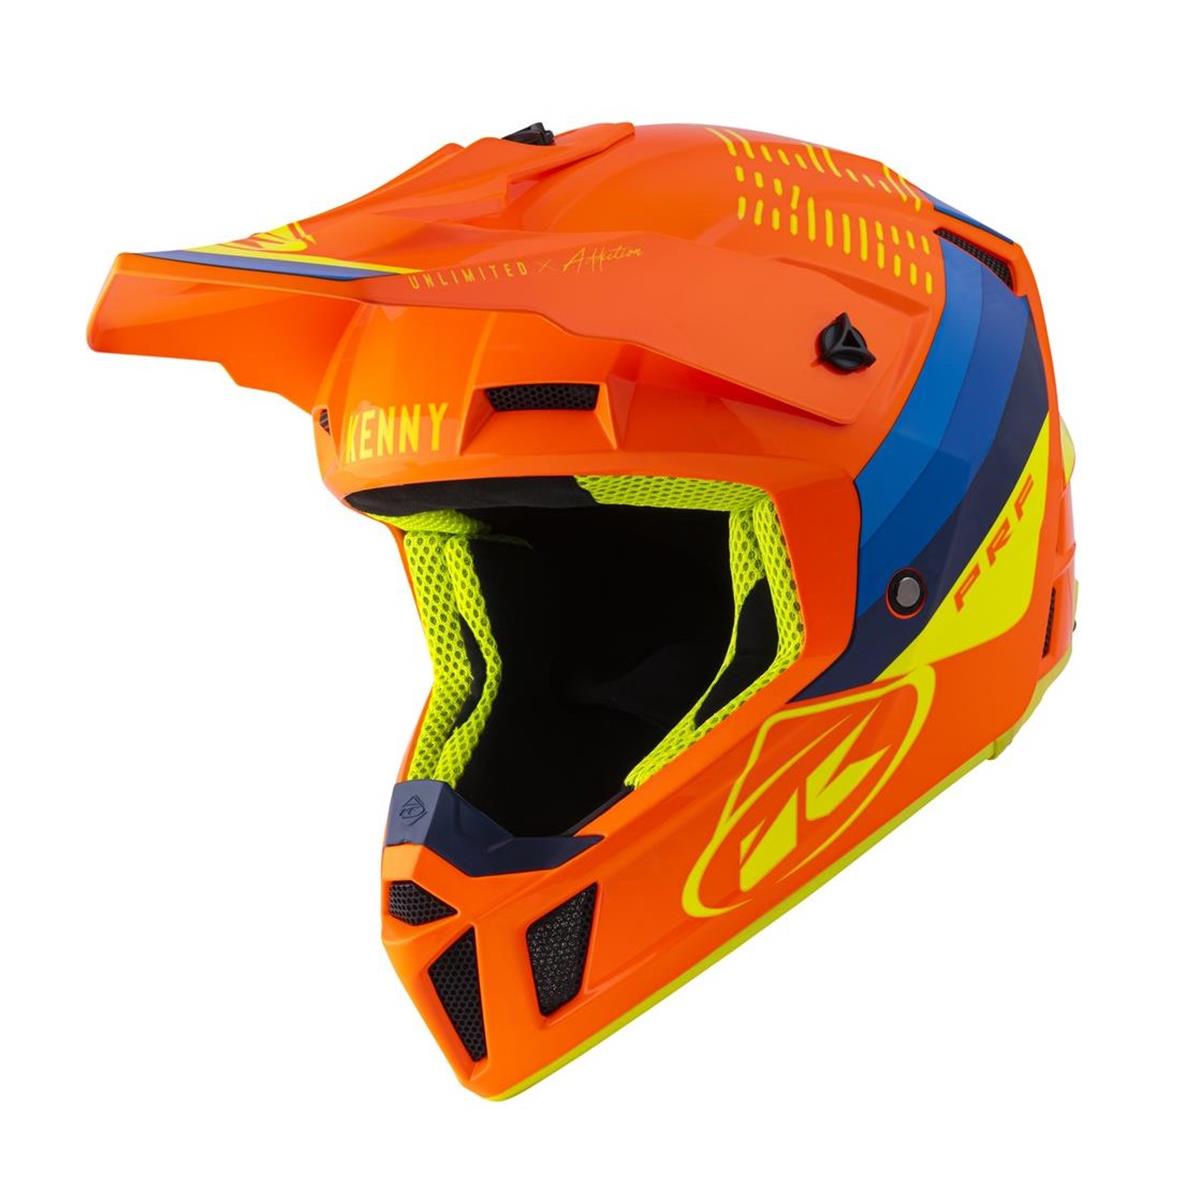 Kenny MX Helmet Performance Graphic - Neon Orange